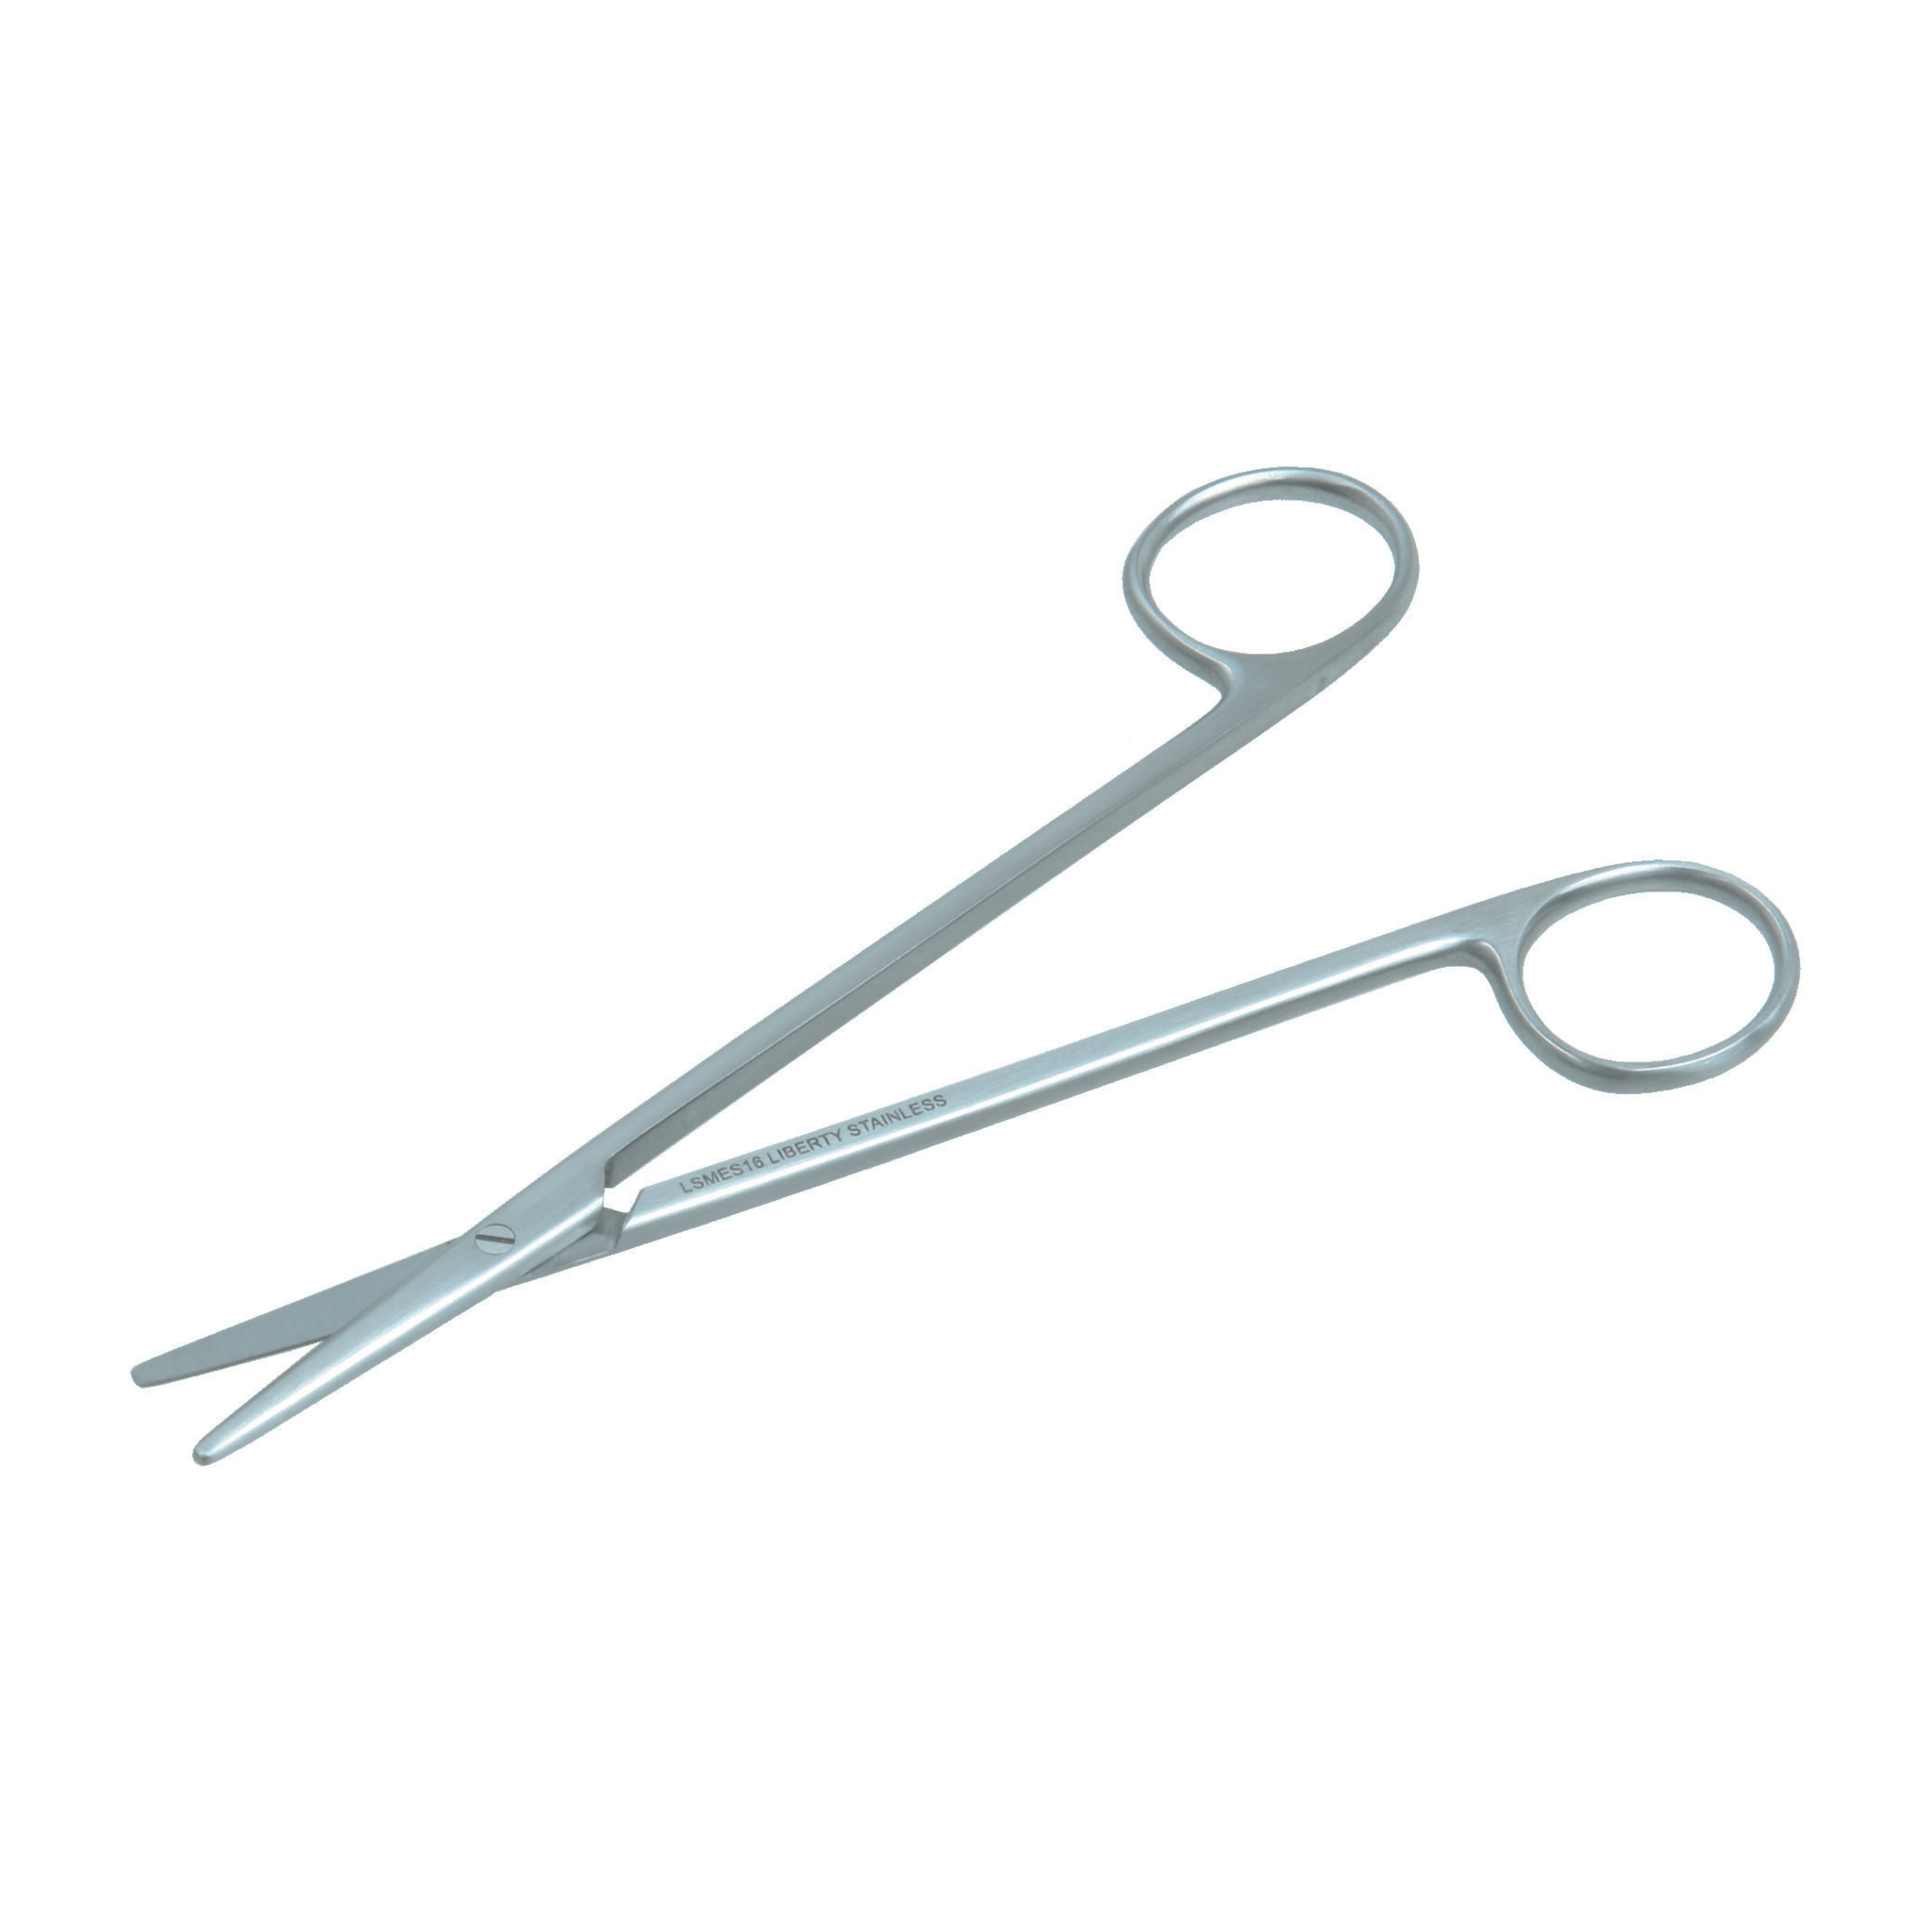 Metzenbaum Scissors- Straight, 16 cm